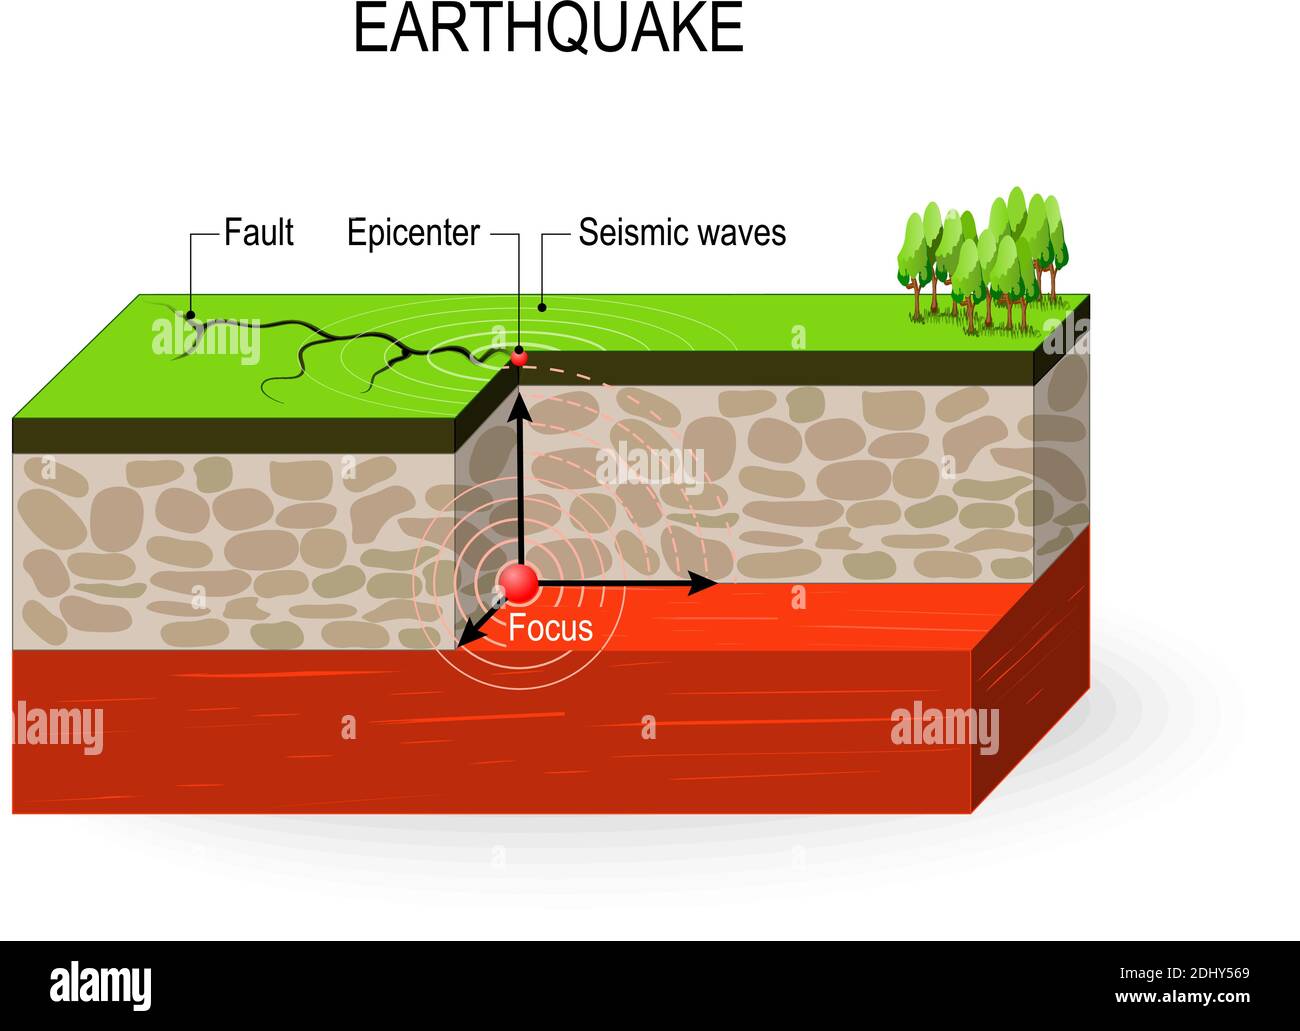 Erdbeben. Seismische Aktivität: Seismische Wellen, Verwerfung, Fokus und Epizentrum Erdbeben Stock Vektor